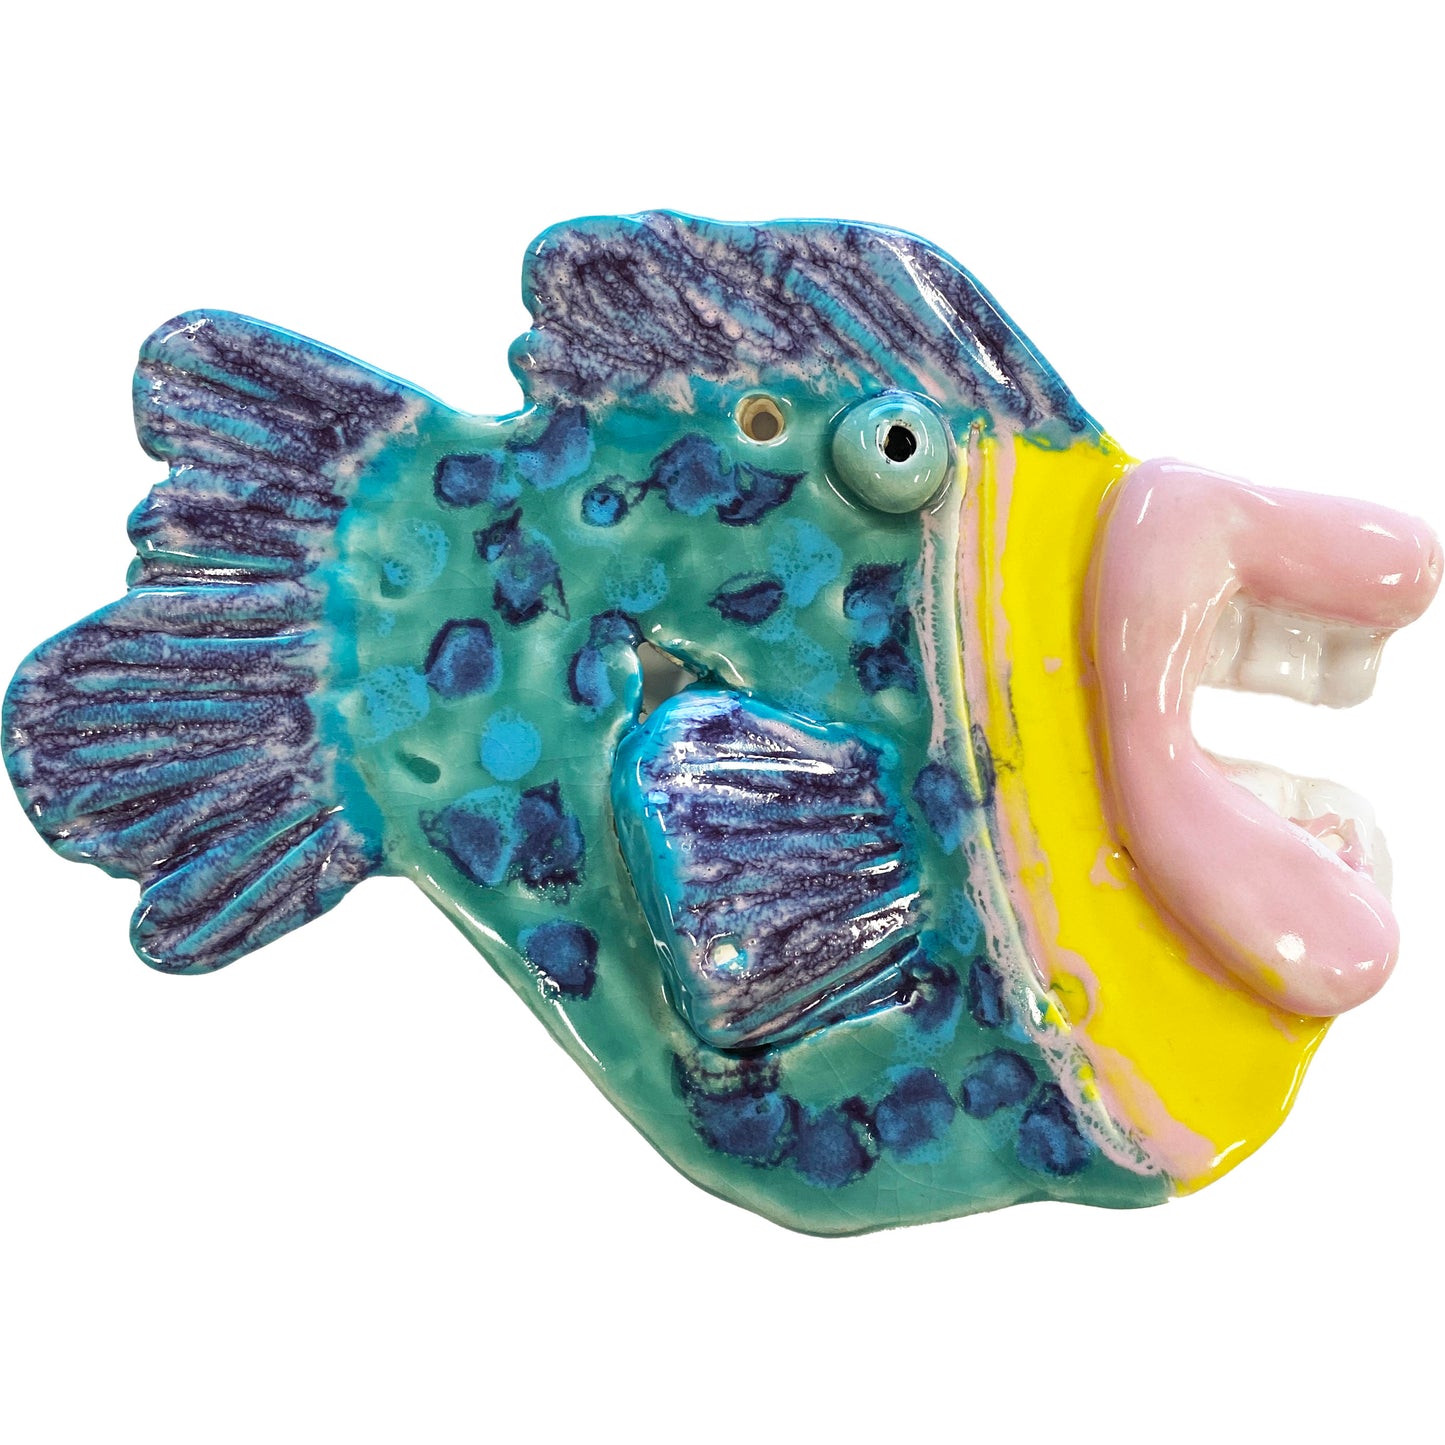 Ceramic Arts Handmade Clay Crafts Fresh Fish Glazed 6.5-inch x 4.5-inch by Patty Farley